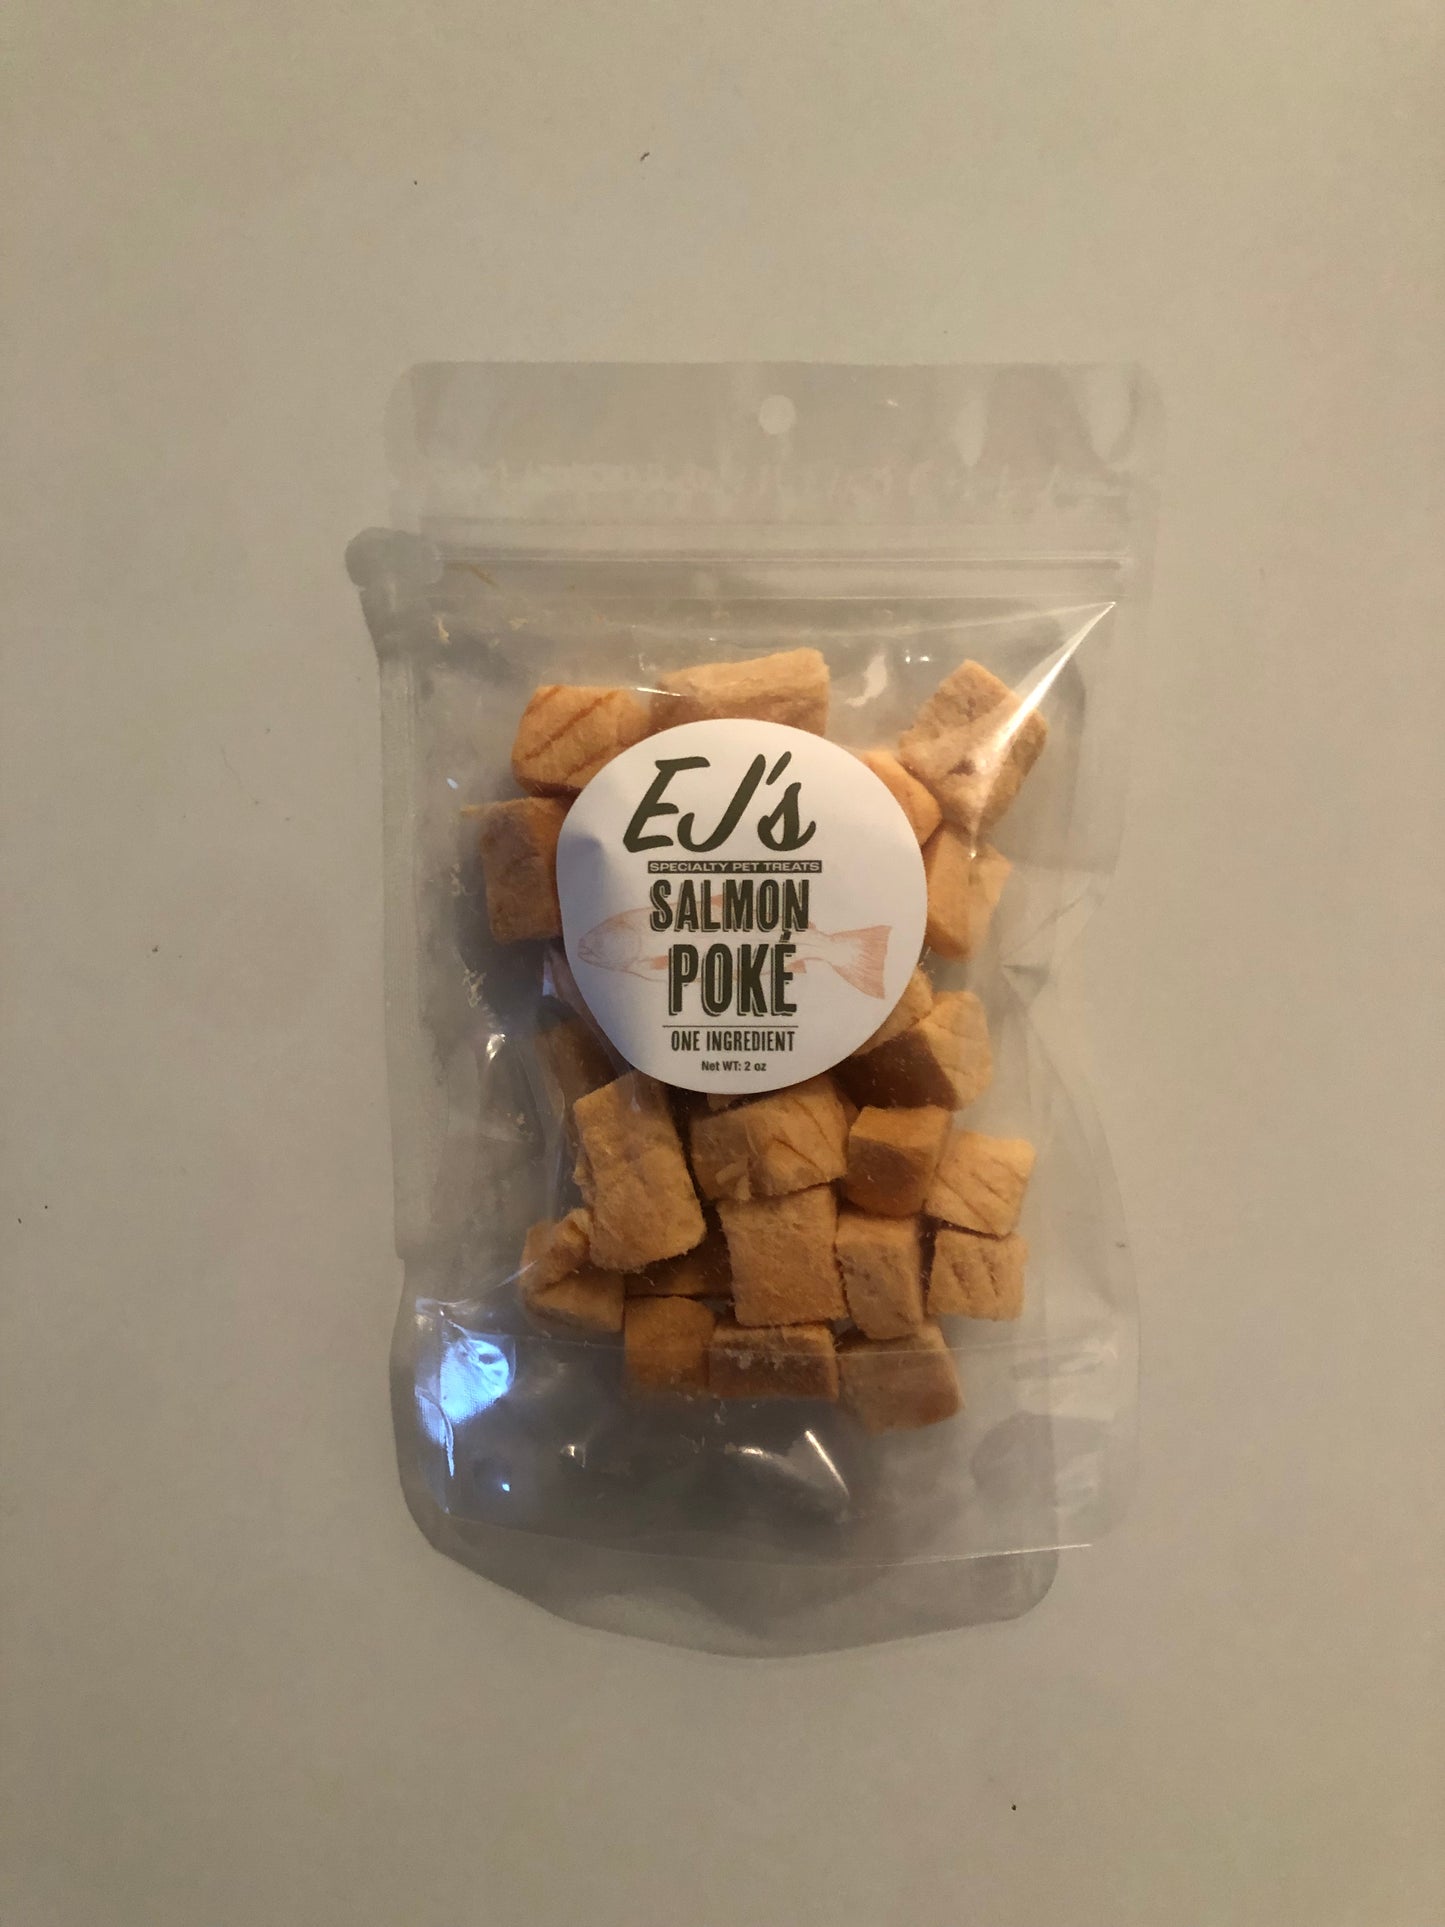 EJ's Specialty Dog & Cat Treats - Salmon Poke - 2 oz.